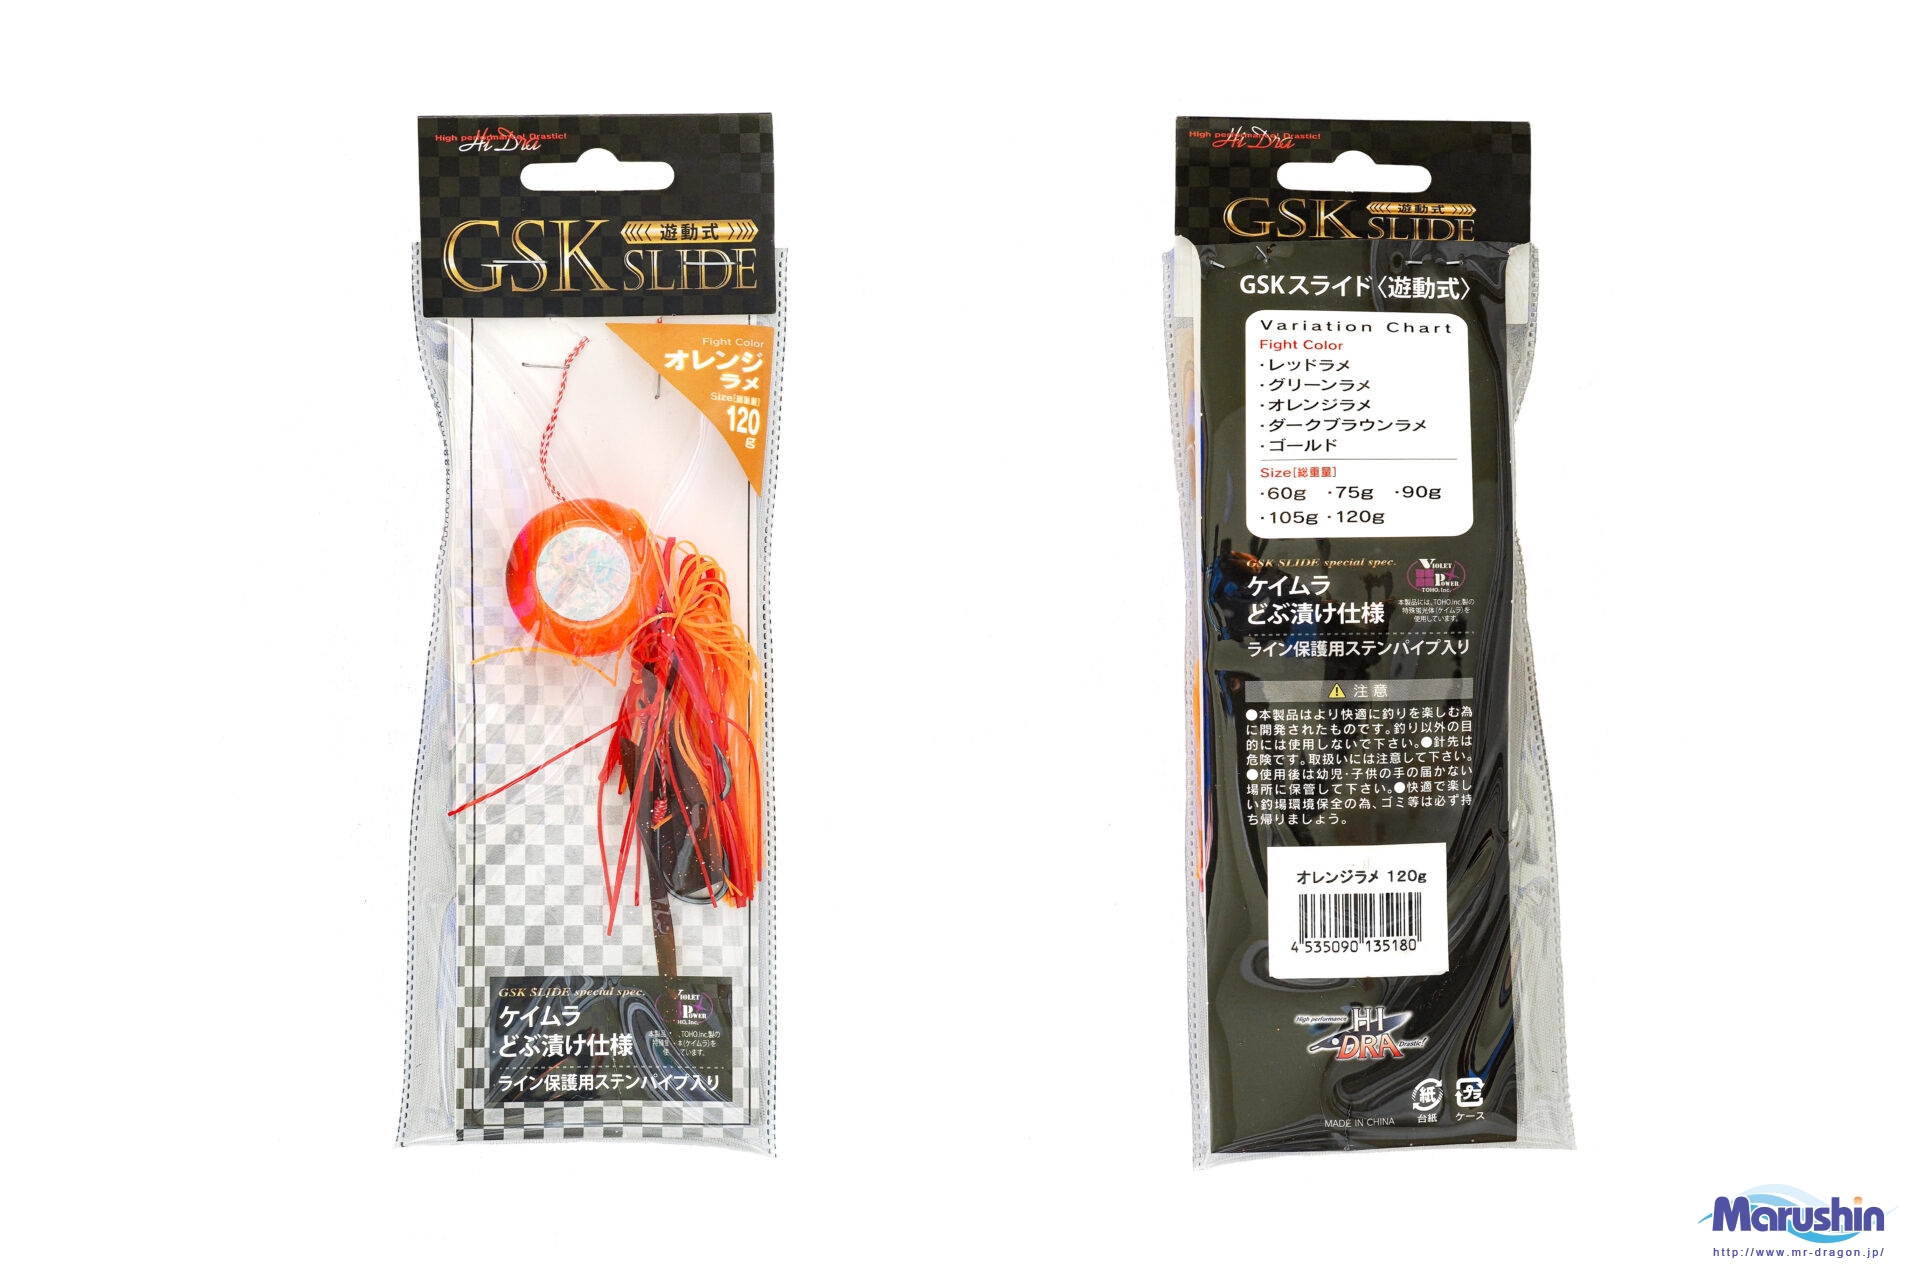 GSKスライド / 60g~120g 全6色イメージ画像